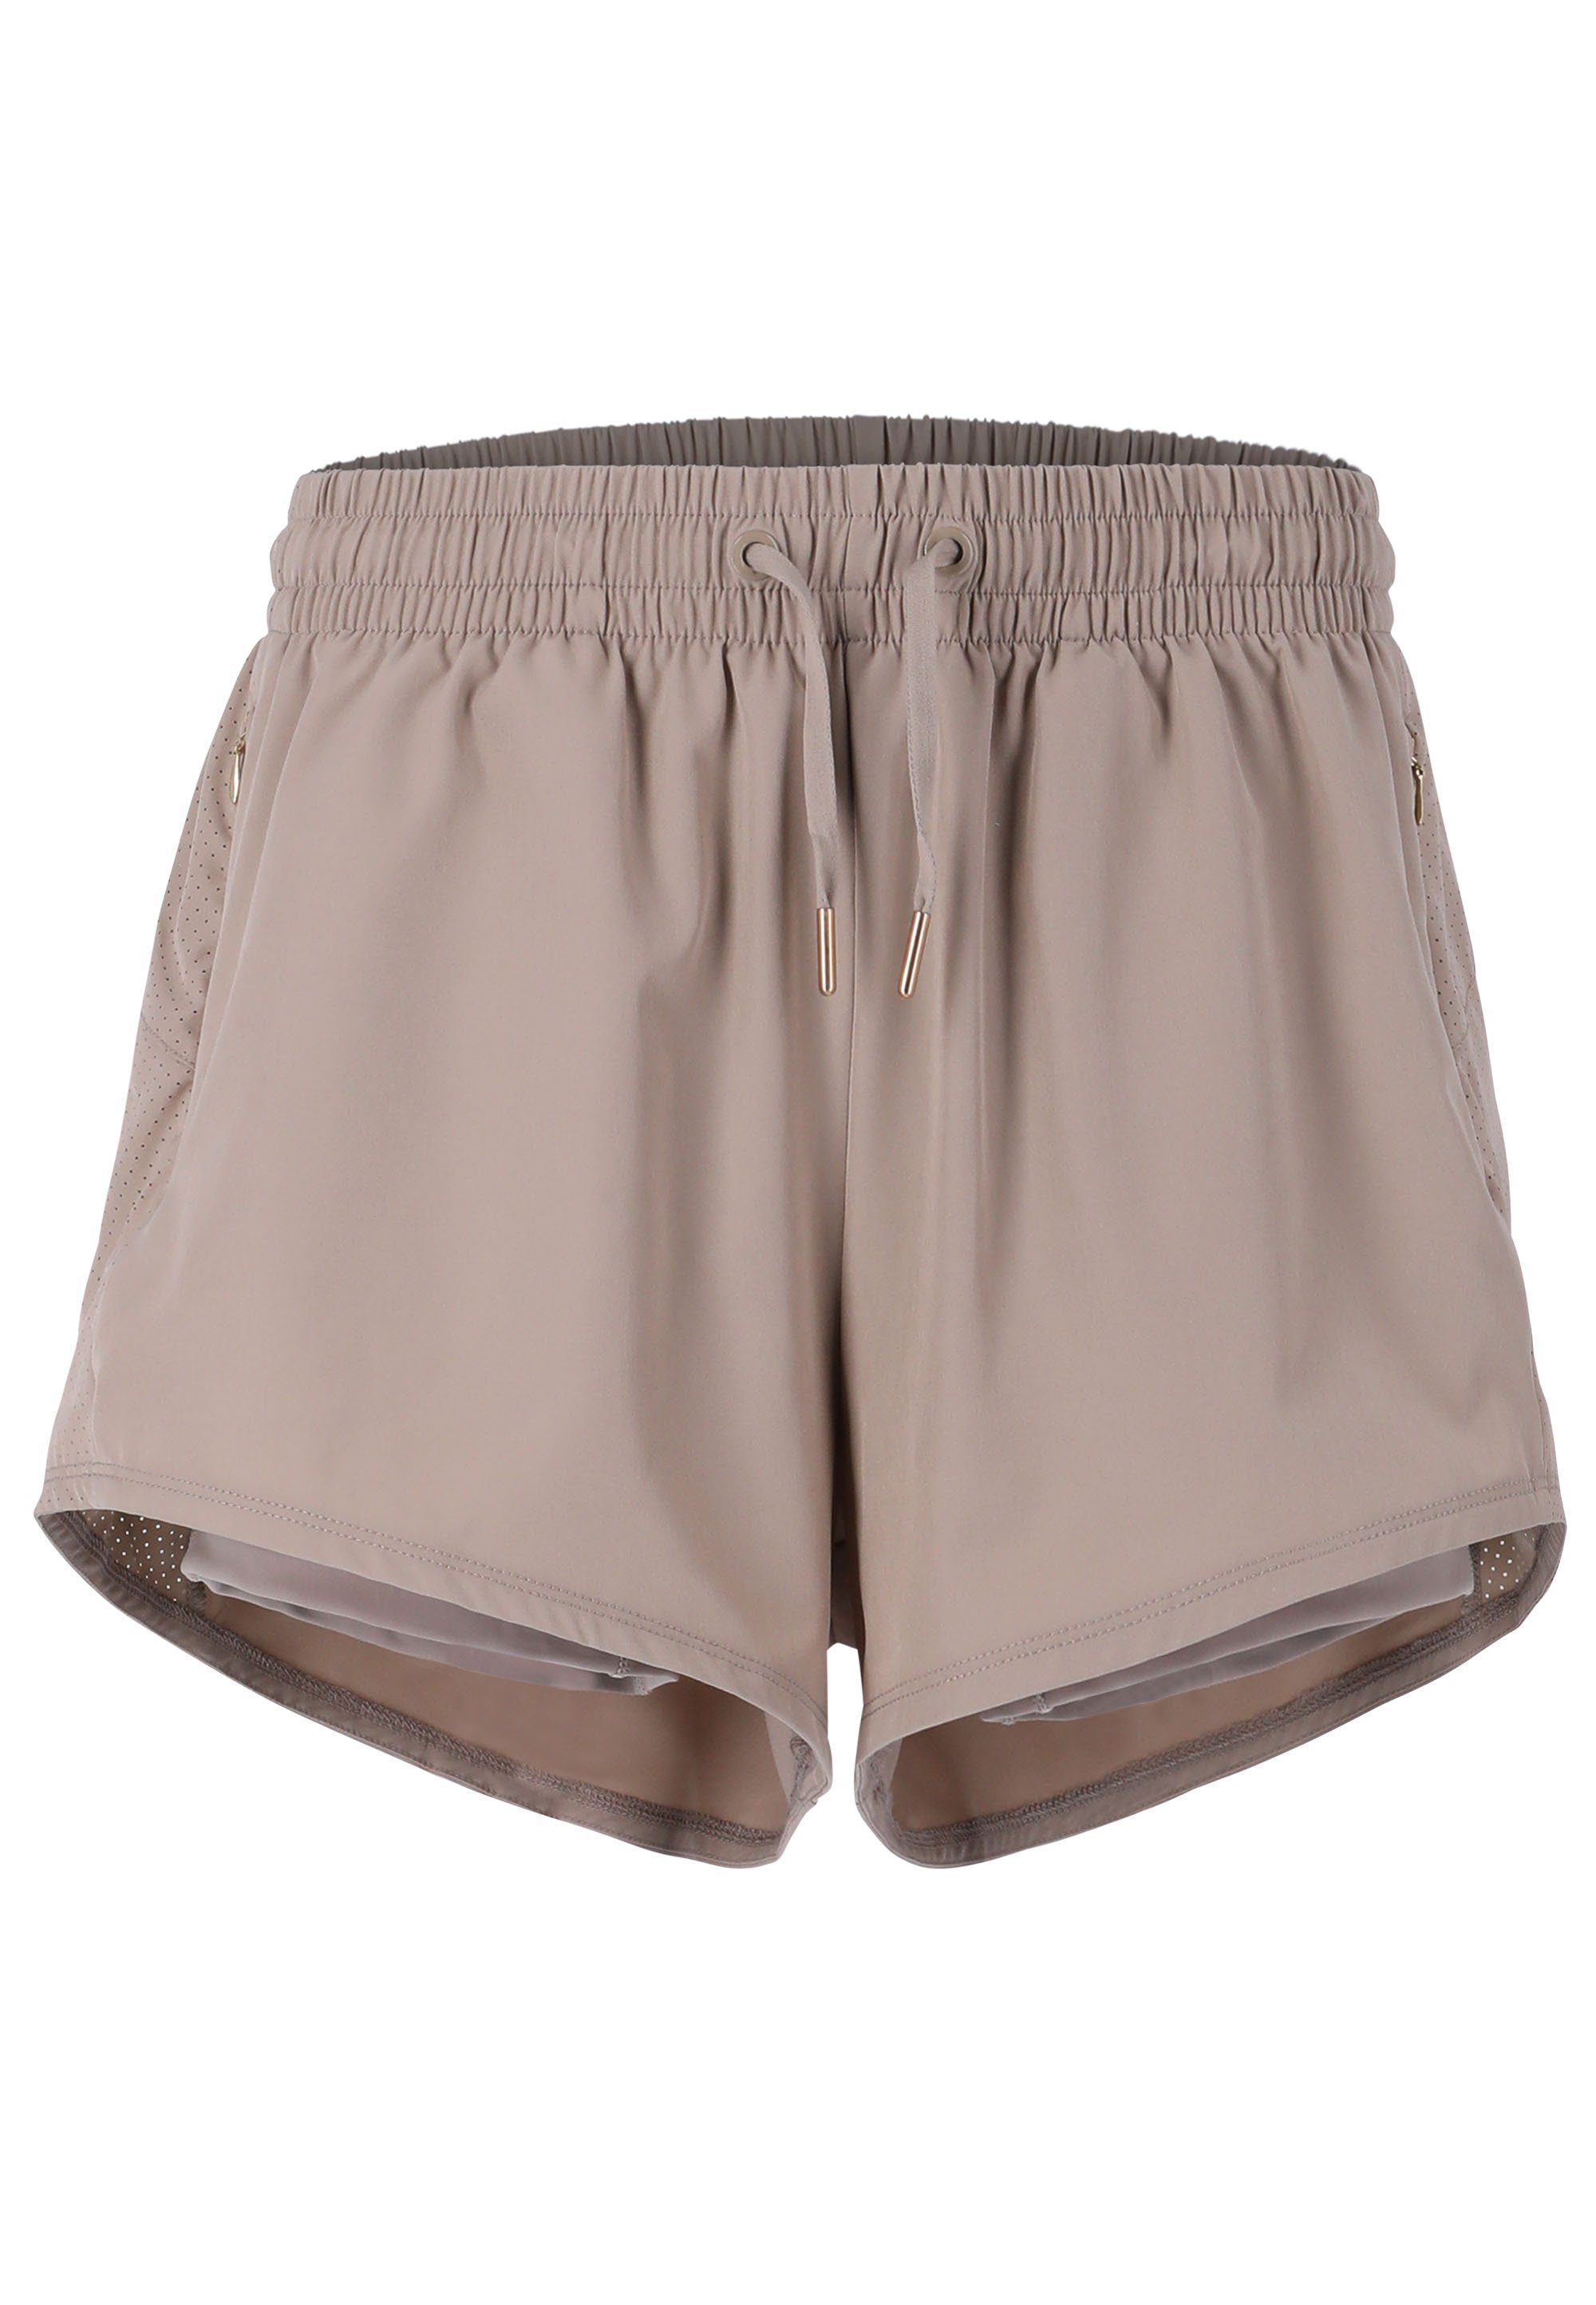 ENDURANCE Shorts praktischen Taschen beige mit Eslaire